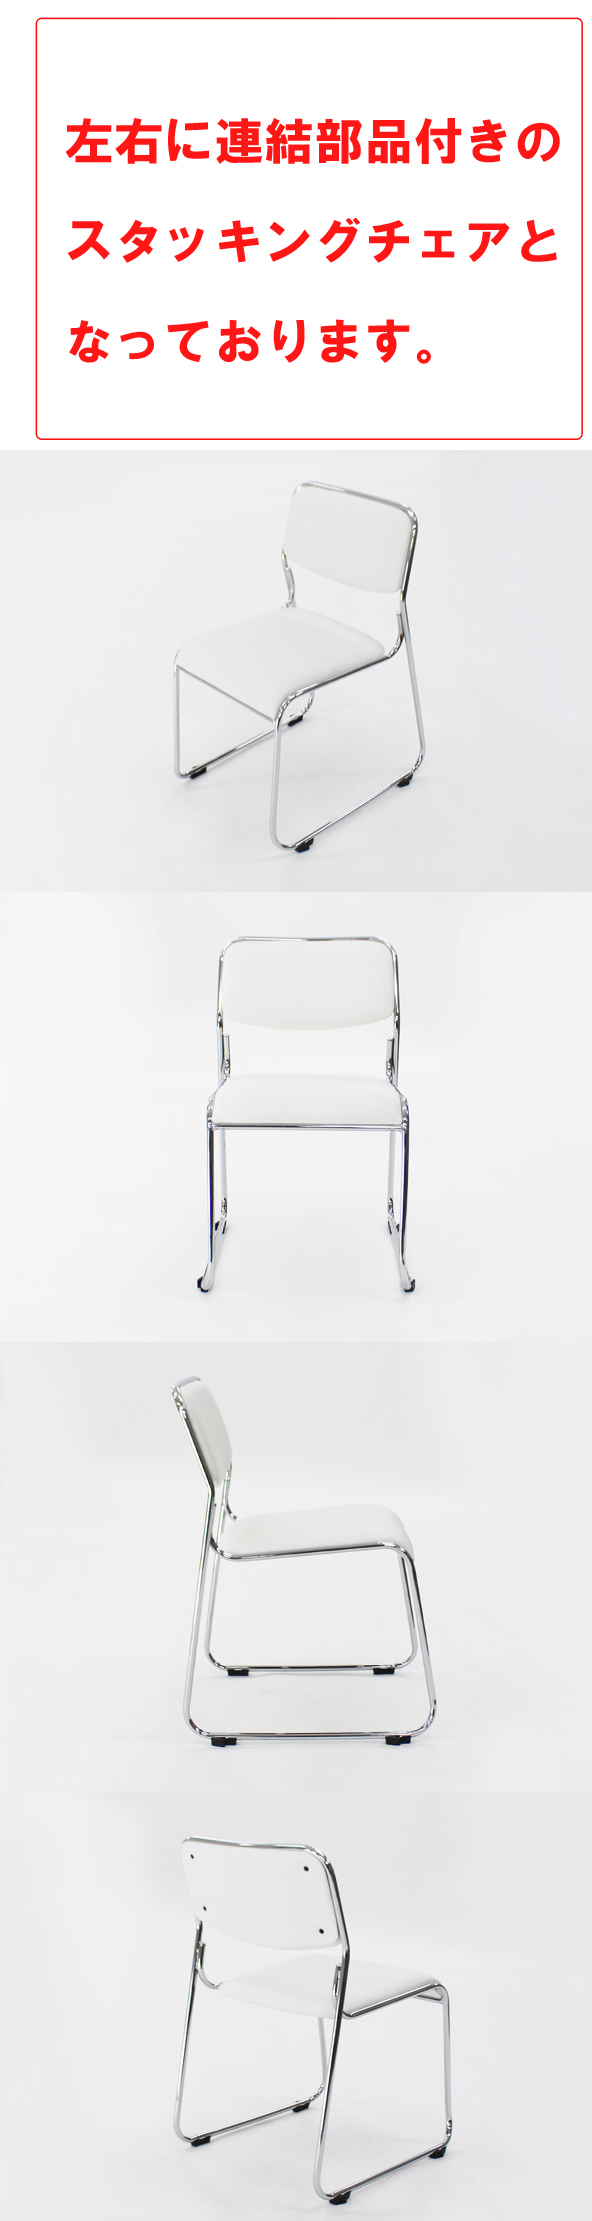 高品質送料無料 連結可能 スタッキングチェア 6脚セット ホワイト ミーティングチェア パイプ椅子 会議イス 会議椅子 パイプチェア 横連結可能 パイプイス